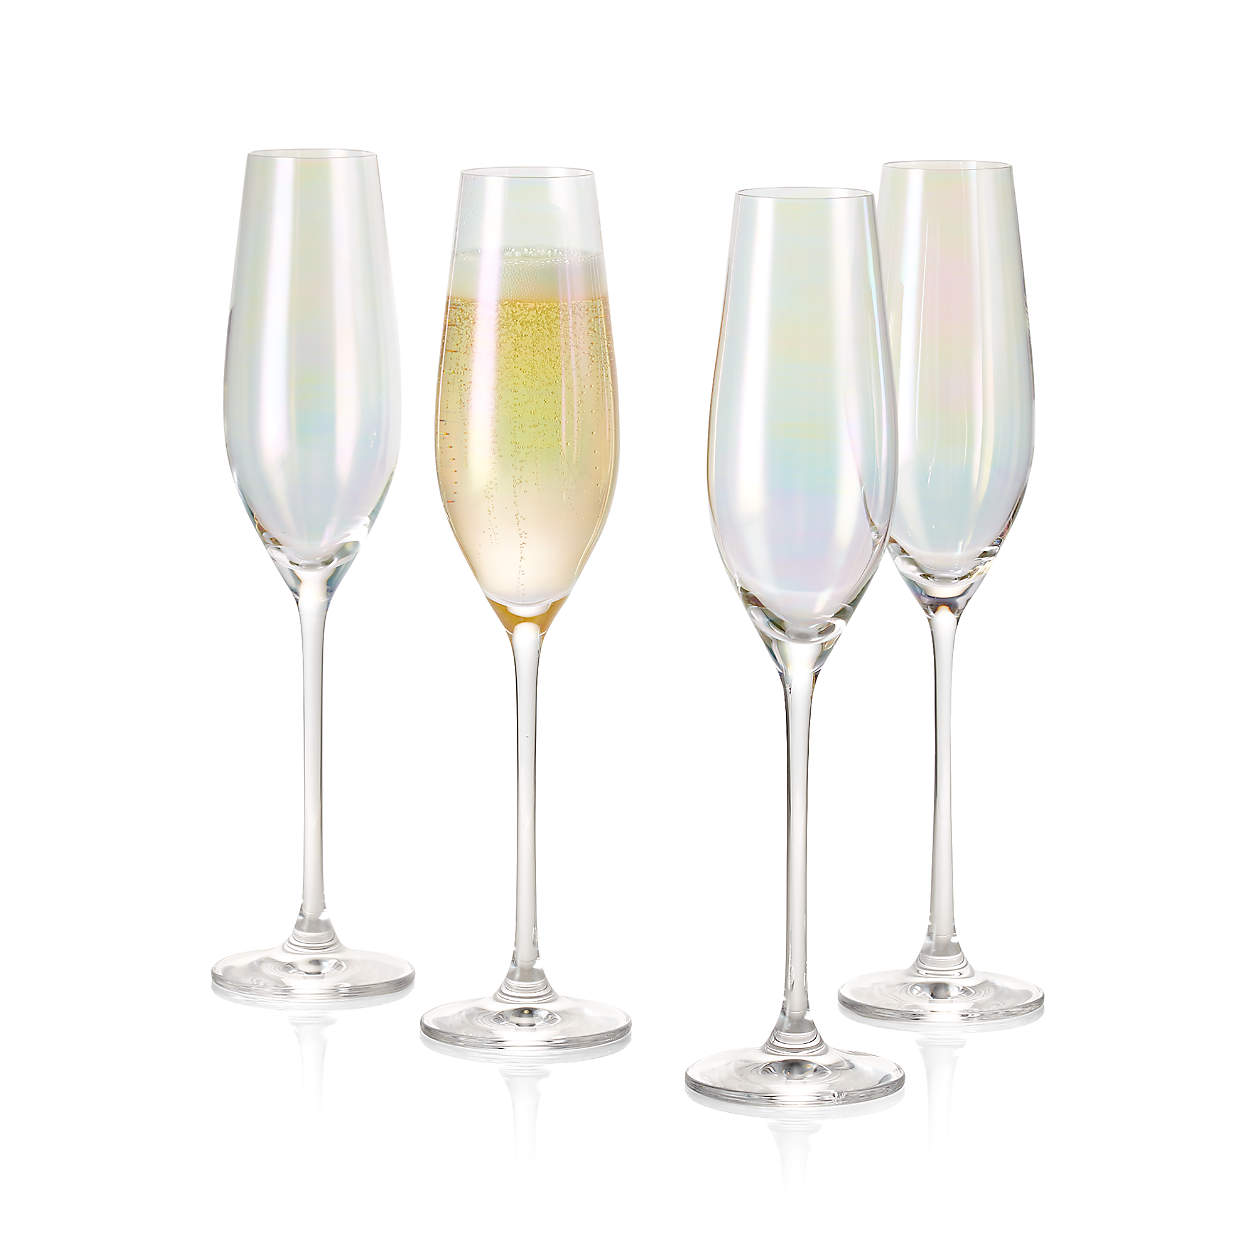 Lunette Champagne Glasses